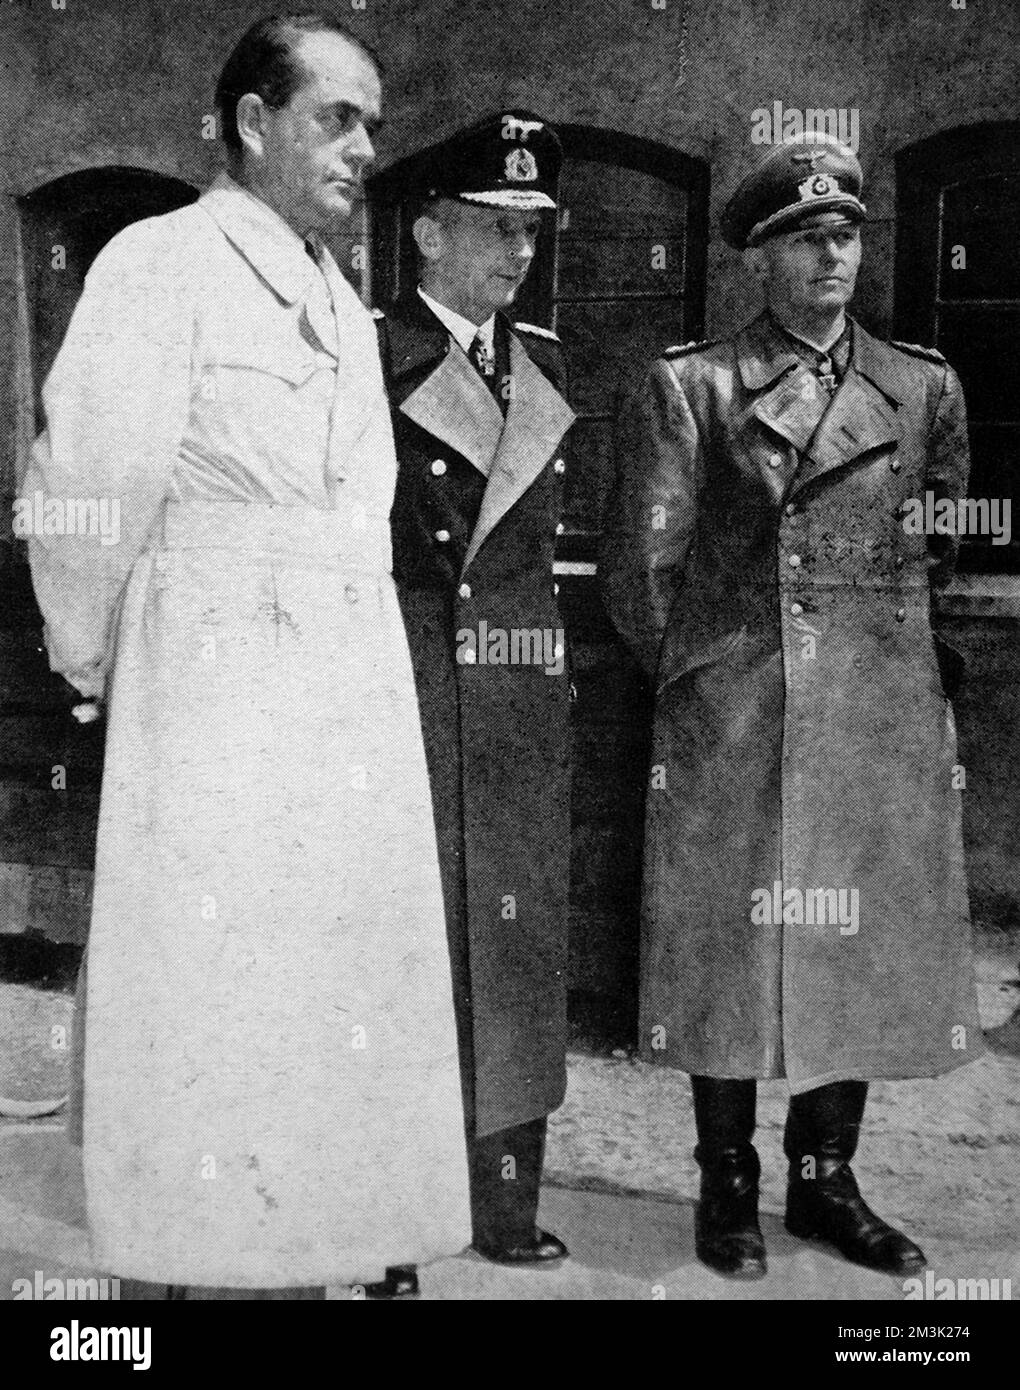 Fotografia che mostra il Dr. Albert Speer (1905-1981), il Grande Ammiraglio Karl Doenitz (1891-1980) e il colonnello generale Alfred Jodl (1890-1946), alla fine della seconda guerra mondiale in Europa, maggio 1945. Data: 1945 Foto Stock